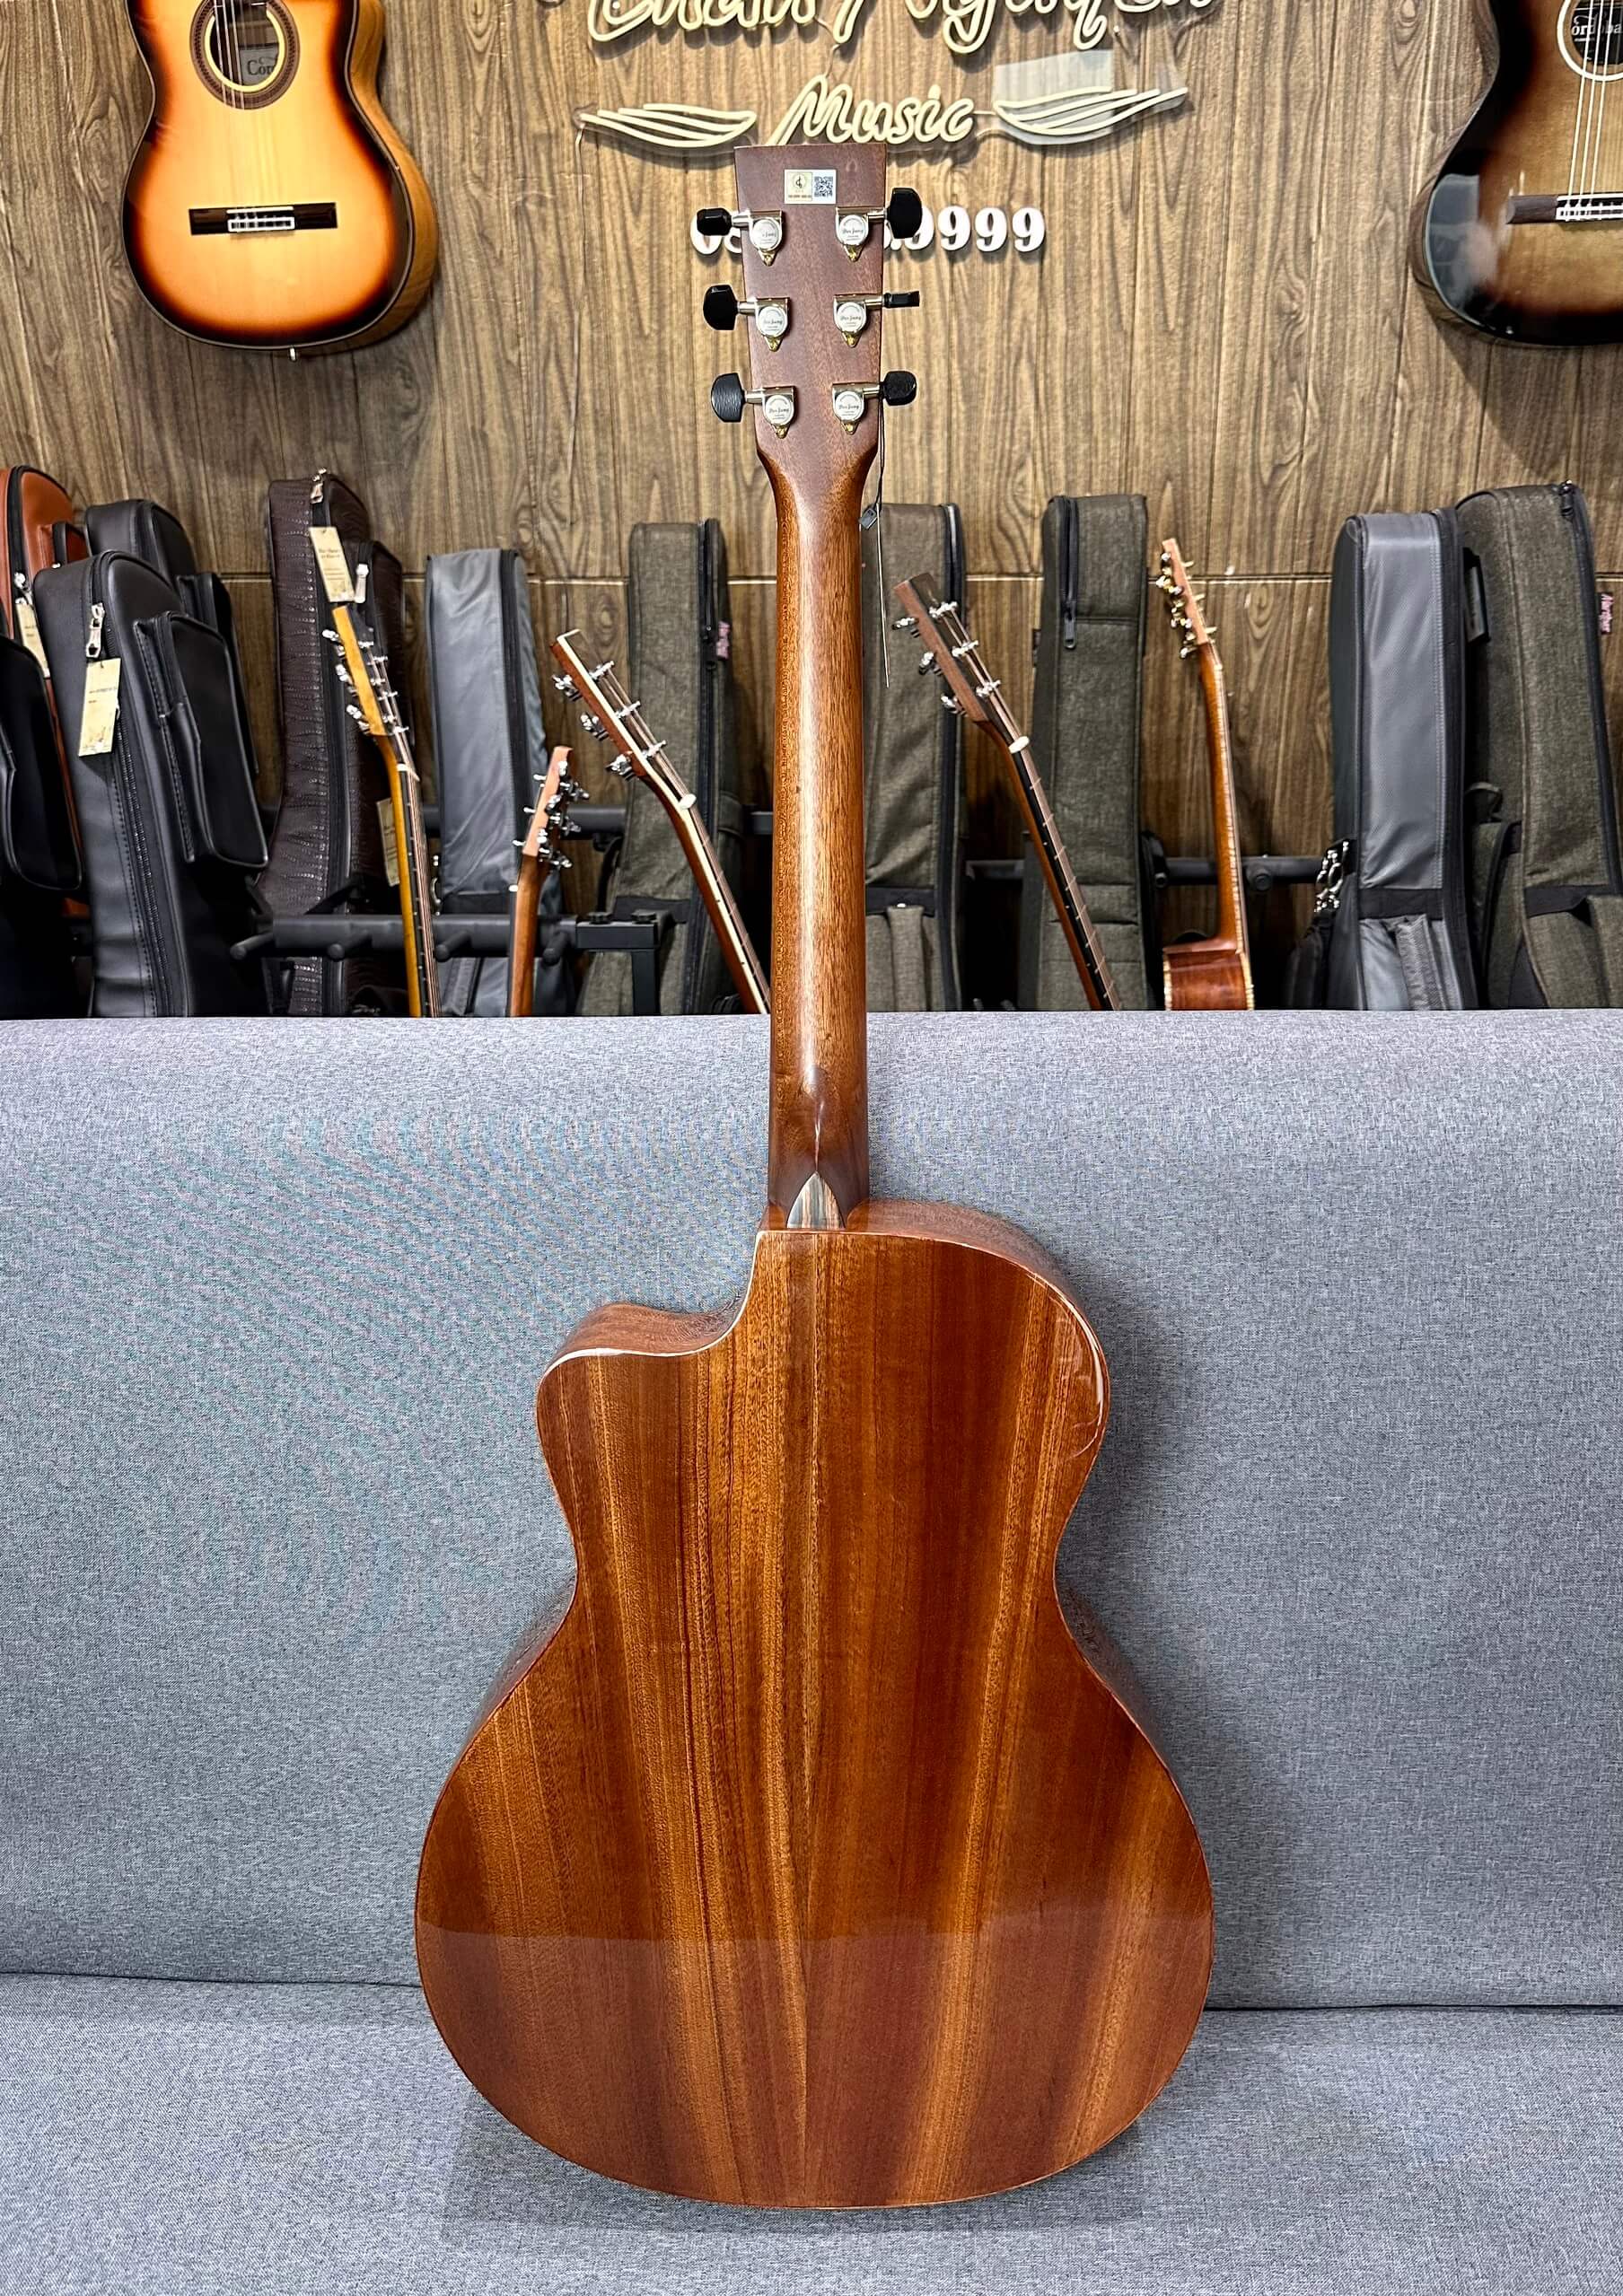 Guitar Acoustic Lương Sơn LSA750CX Custom Standard l Cây Đàn Tốt Nhất Trong Tầm Giá l Bảo Hành Tới 5 Năm